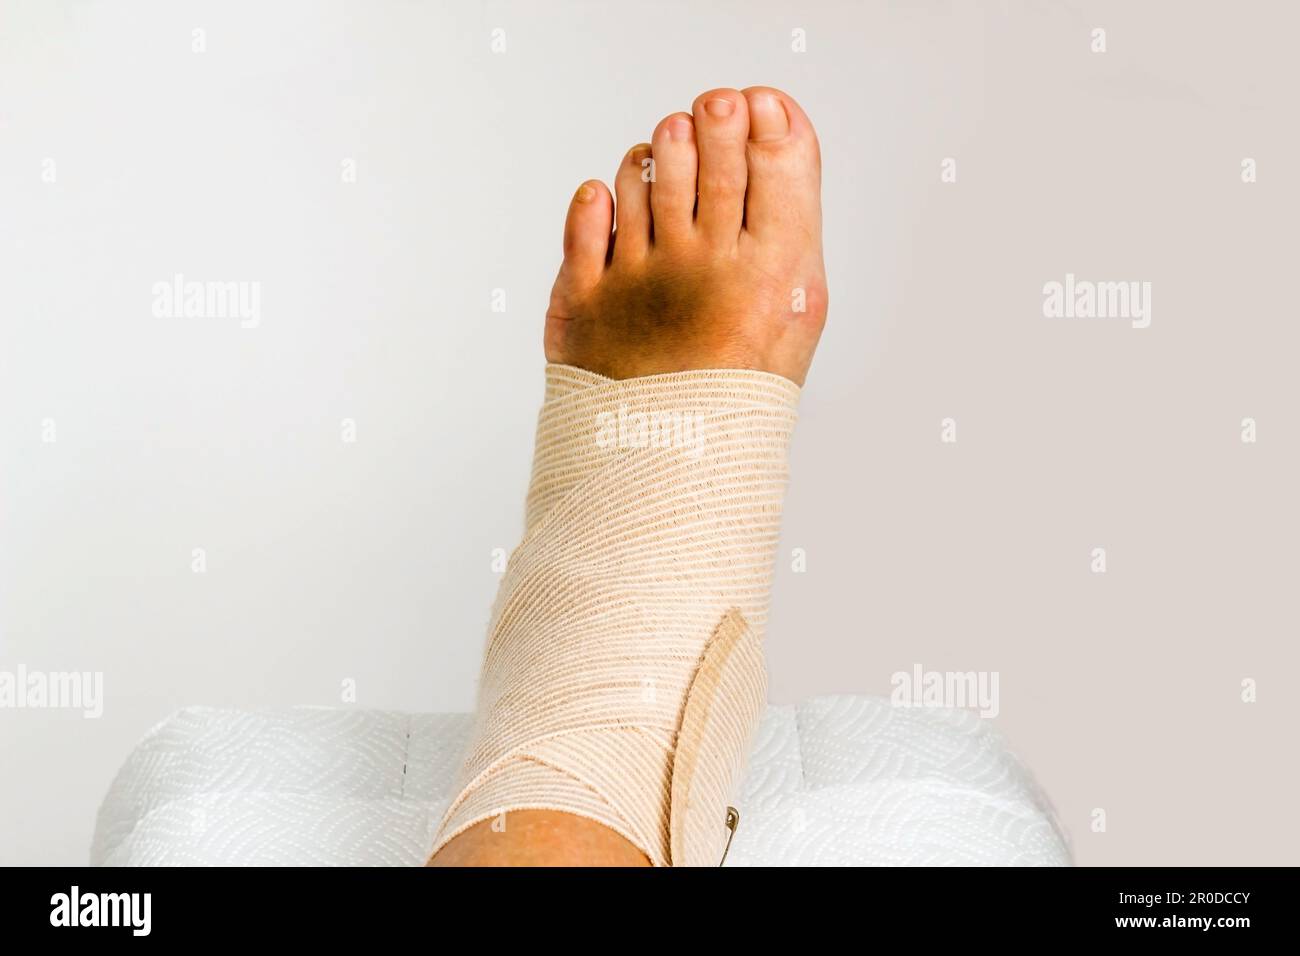 Medical bandage correctly wrapped around female sprained left ankle,close up taken Stock Photo